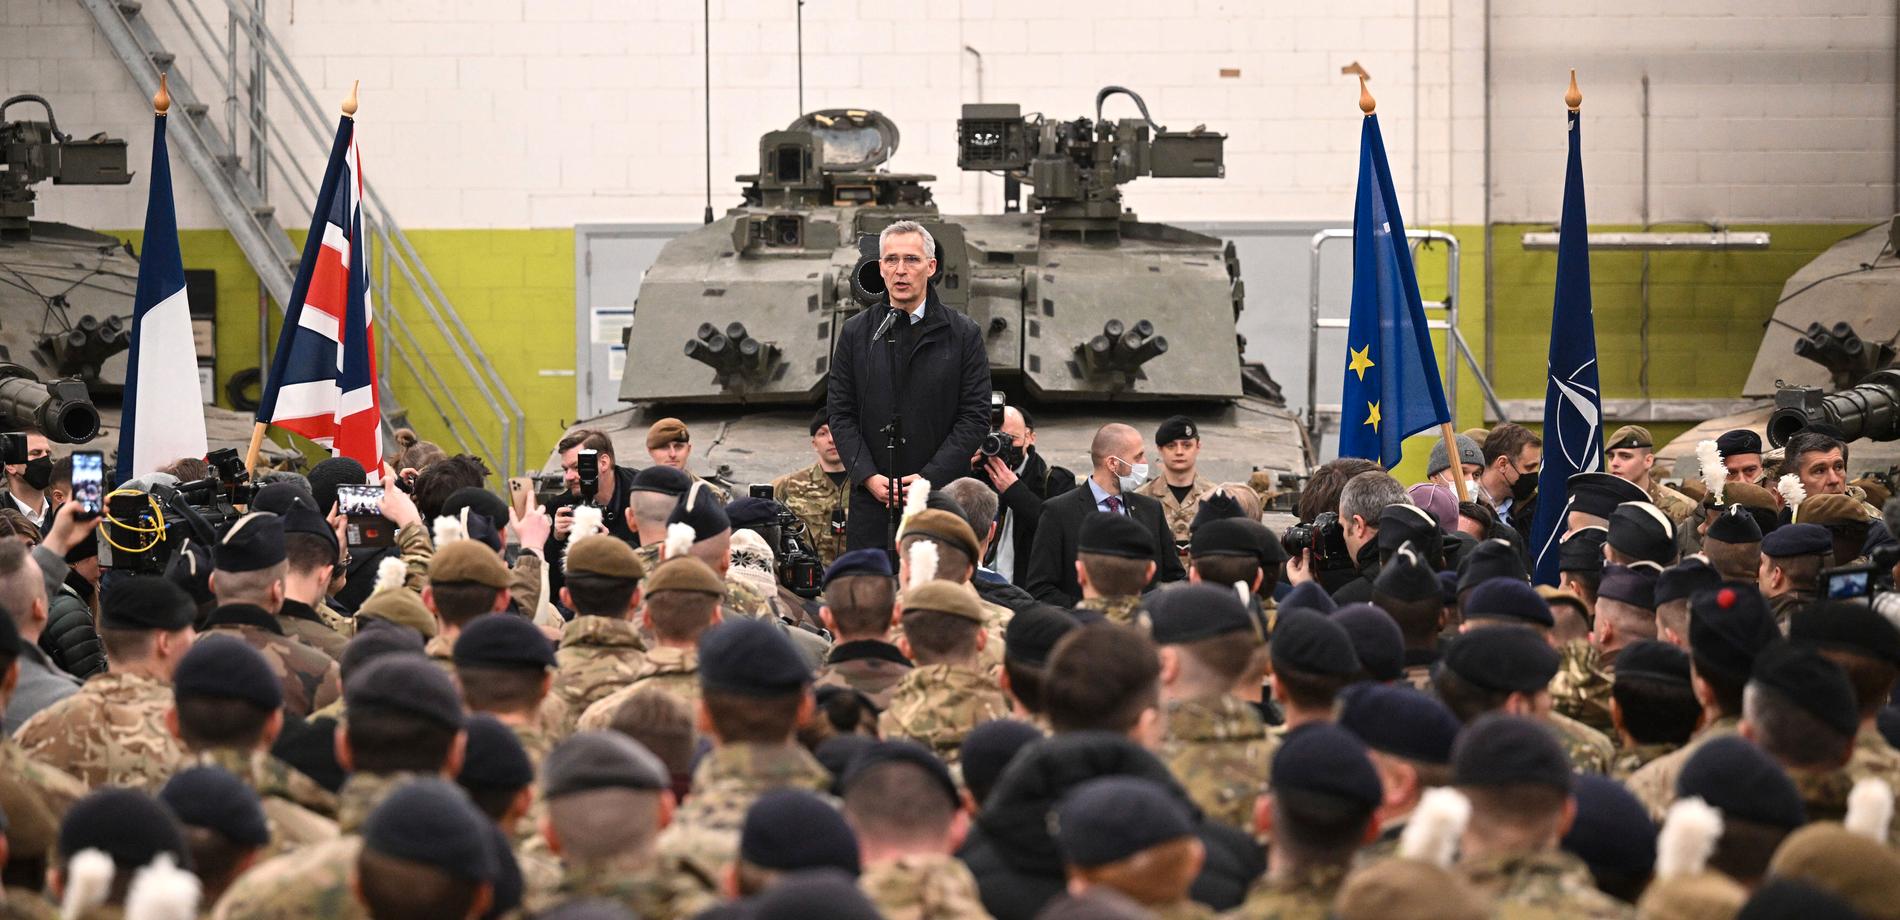 Sekretari i Përgjithshëm i NATO-s, Jens Stoltenberg.